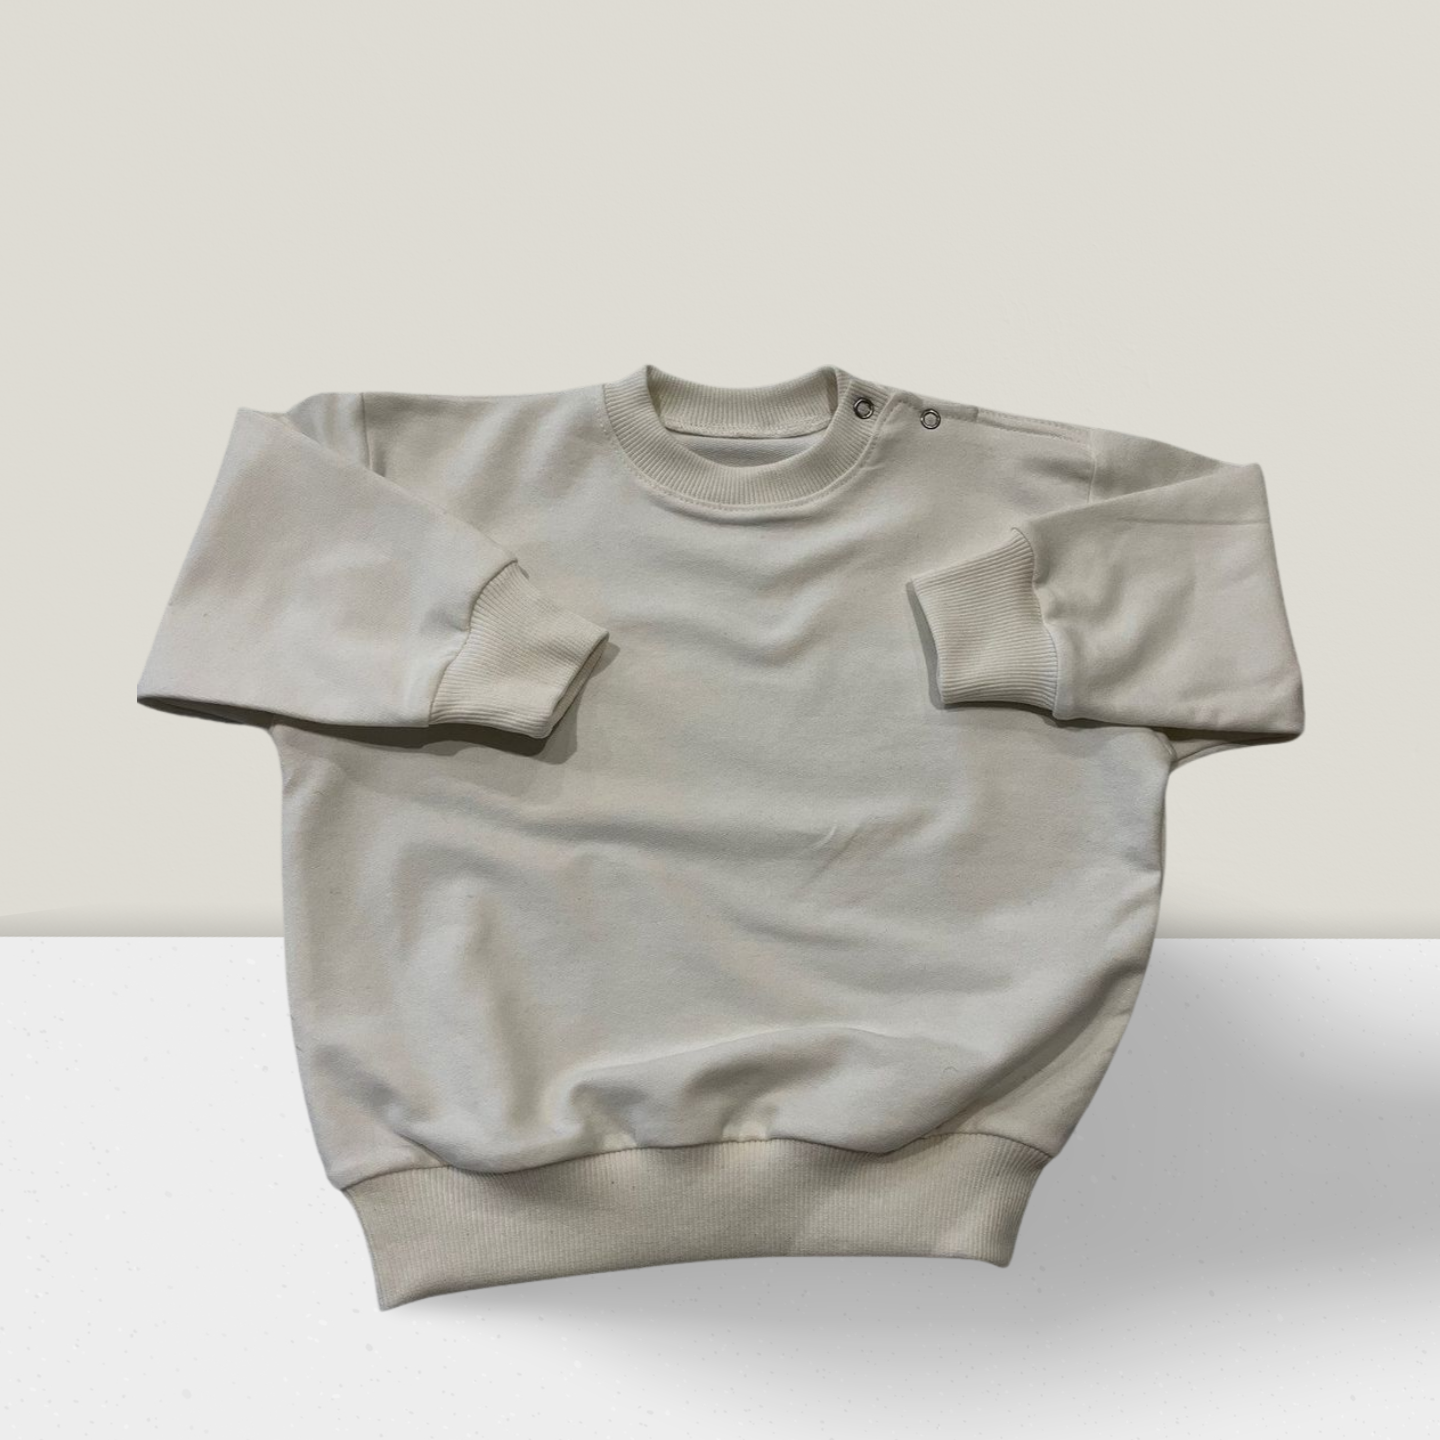 Unisex T-Shirt für Mädchen und Jungen. Premium-Qualität aus natürlichen Materialien